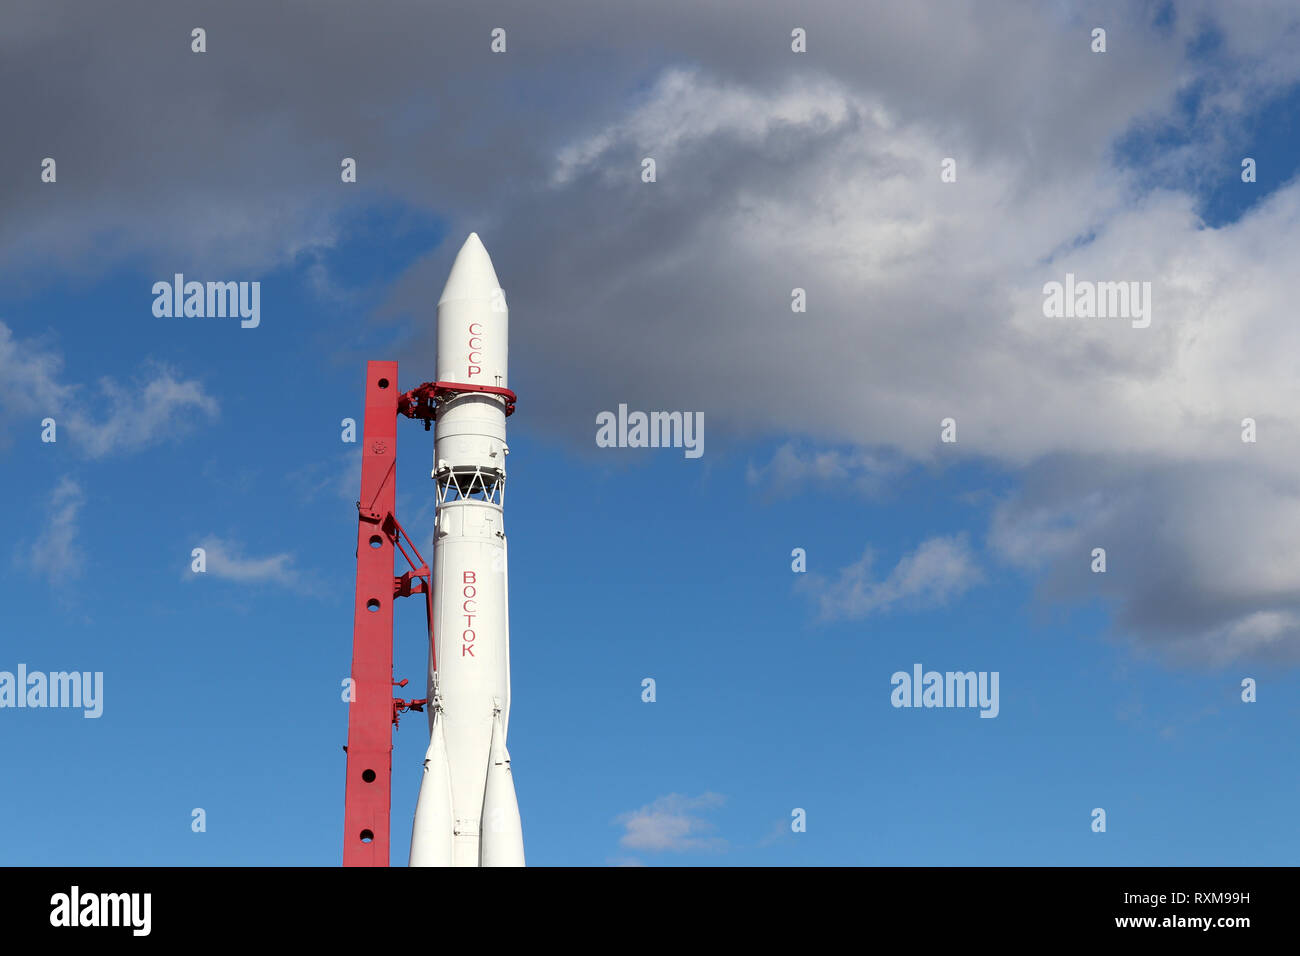 Monumento de la nave espacial rusa 'Vostok 1', el primer cohete soviético en VDNH en Moscú contra el cielo azul con nubes Foto de stock